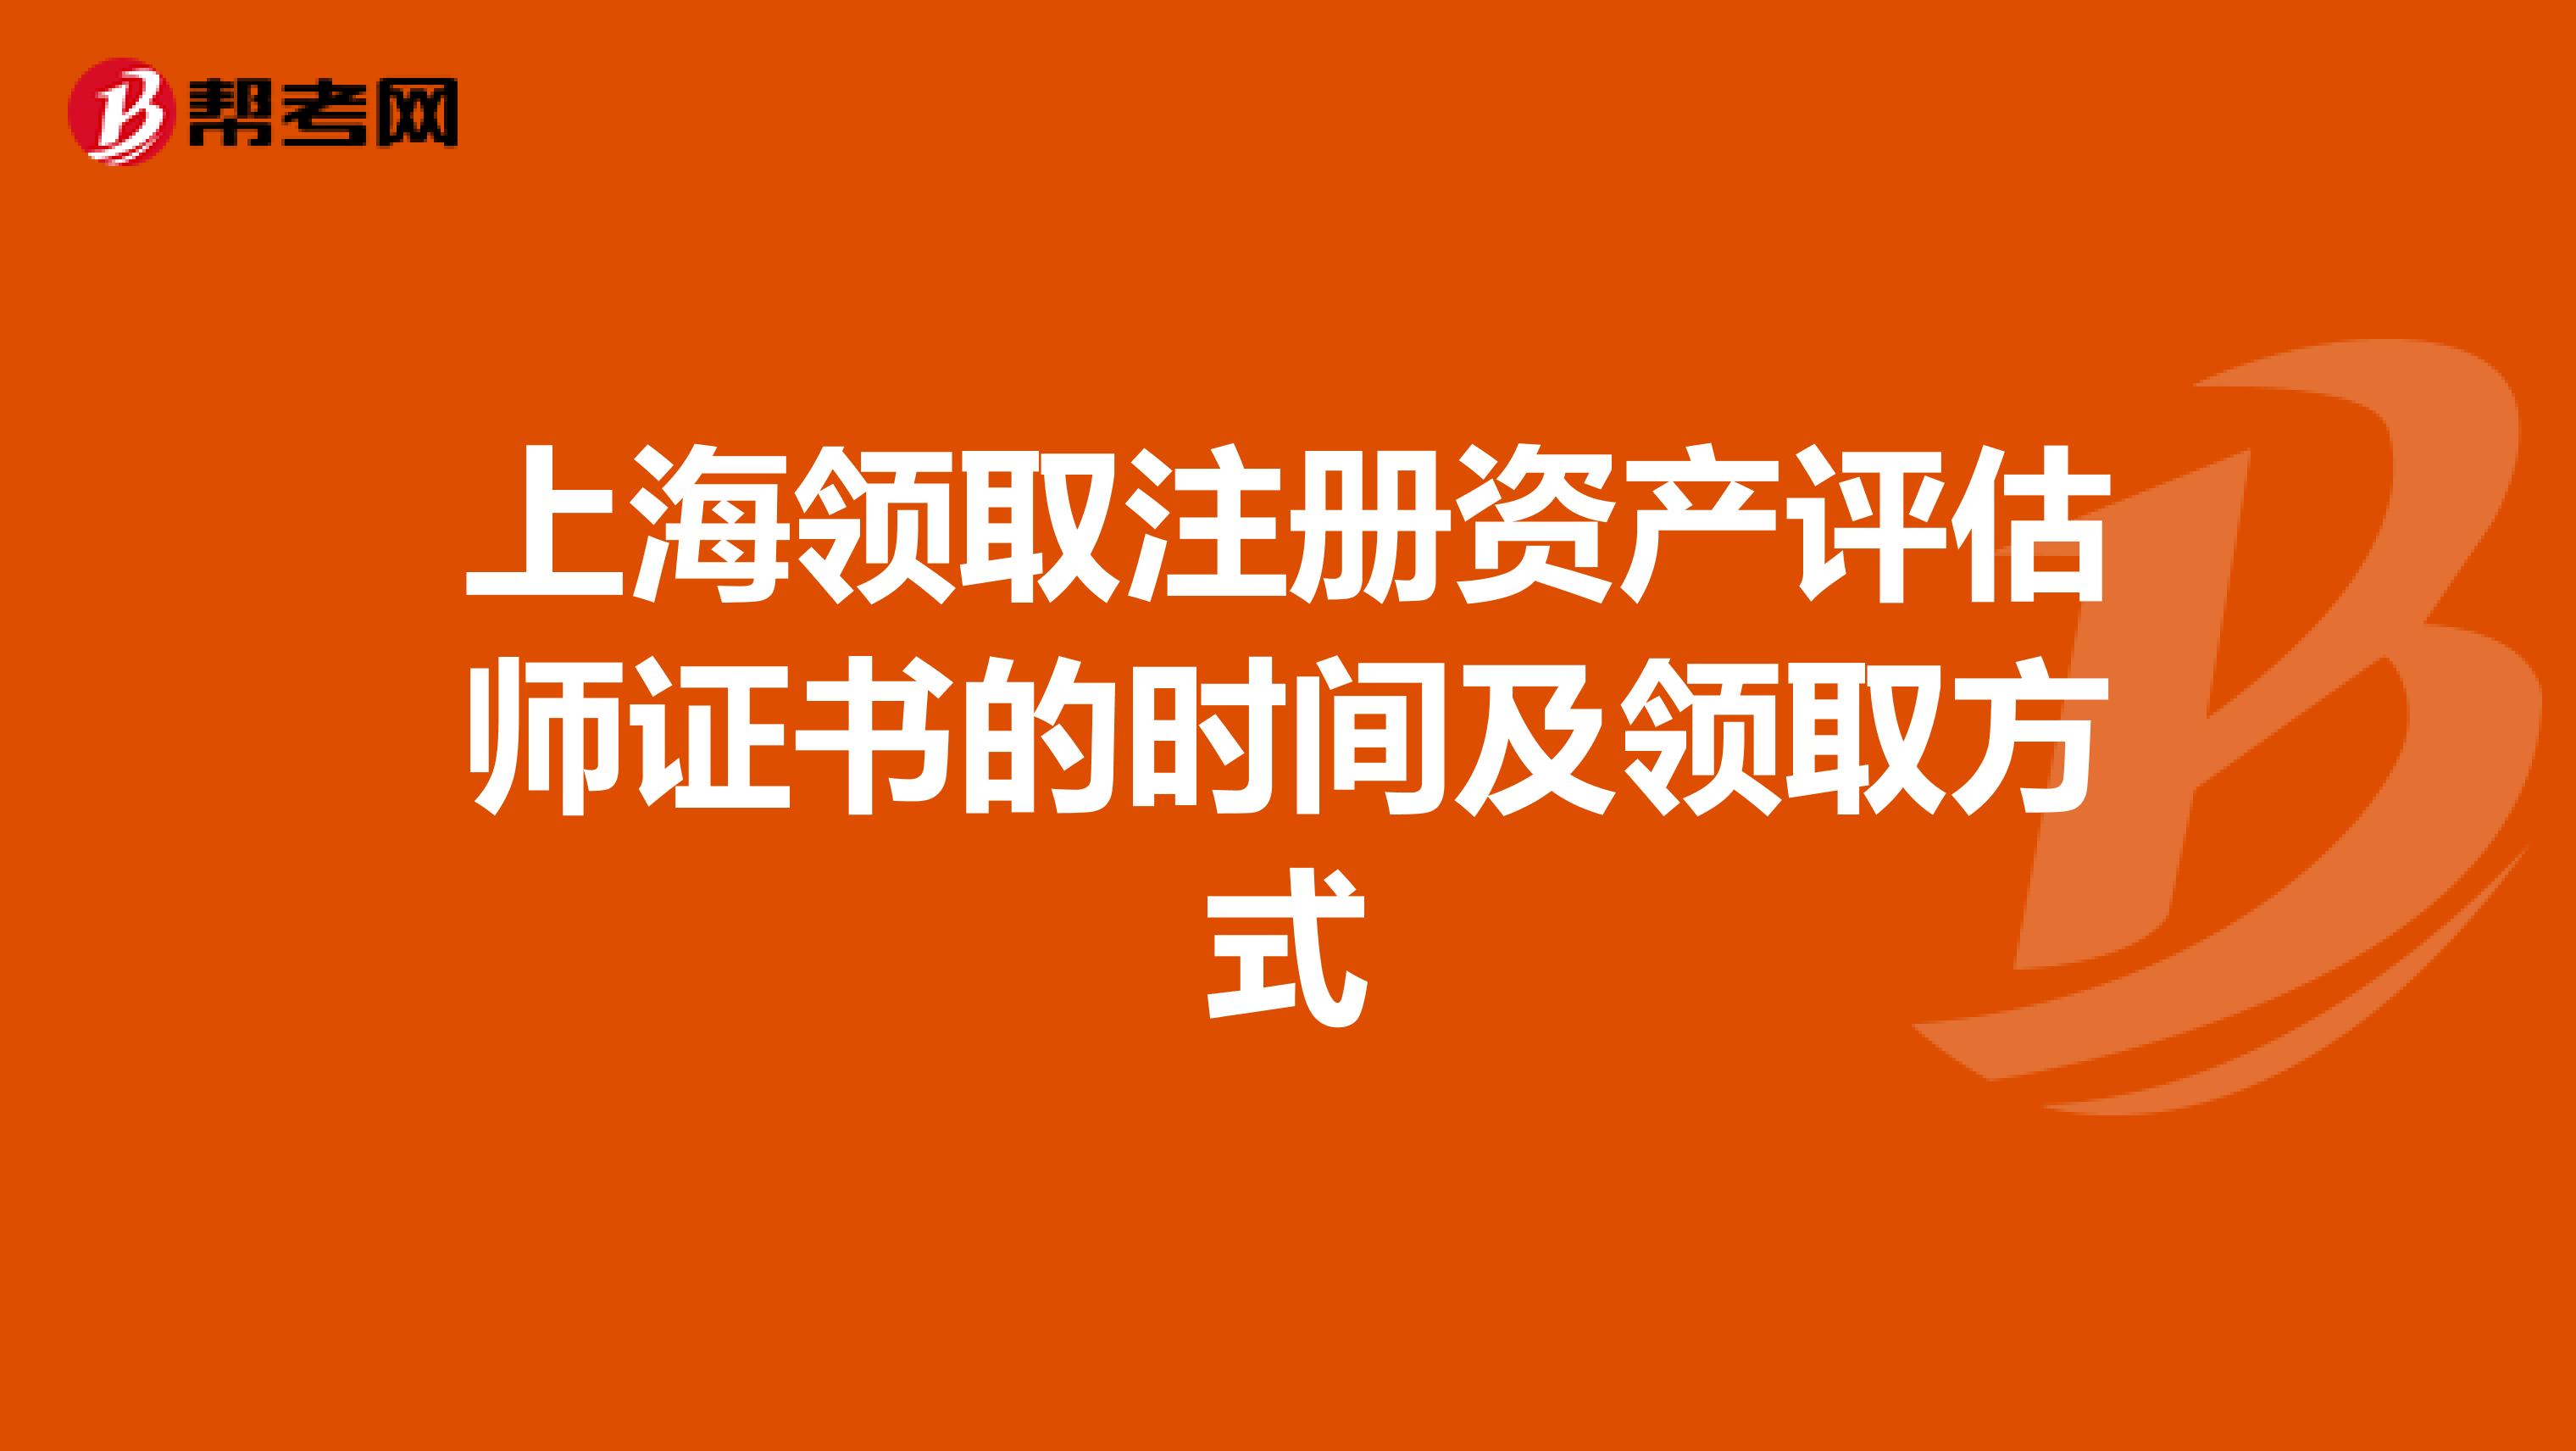 上海领取注册资产评估师证书的时间及领取方式